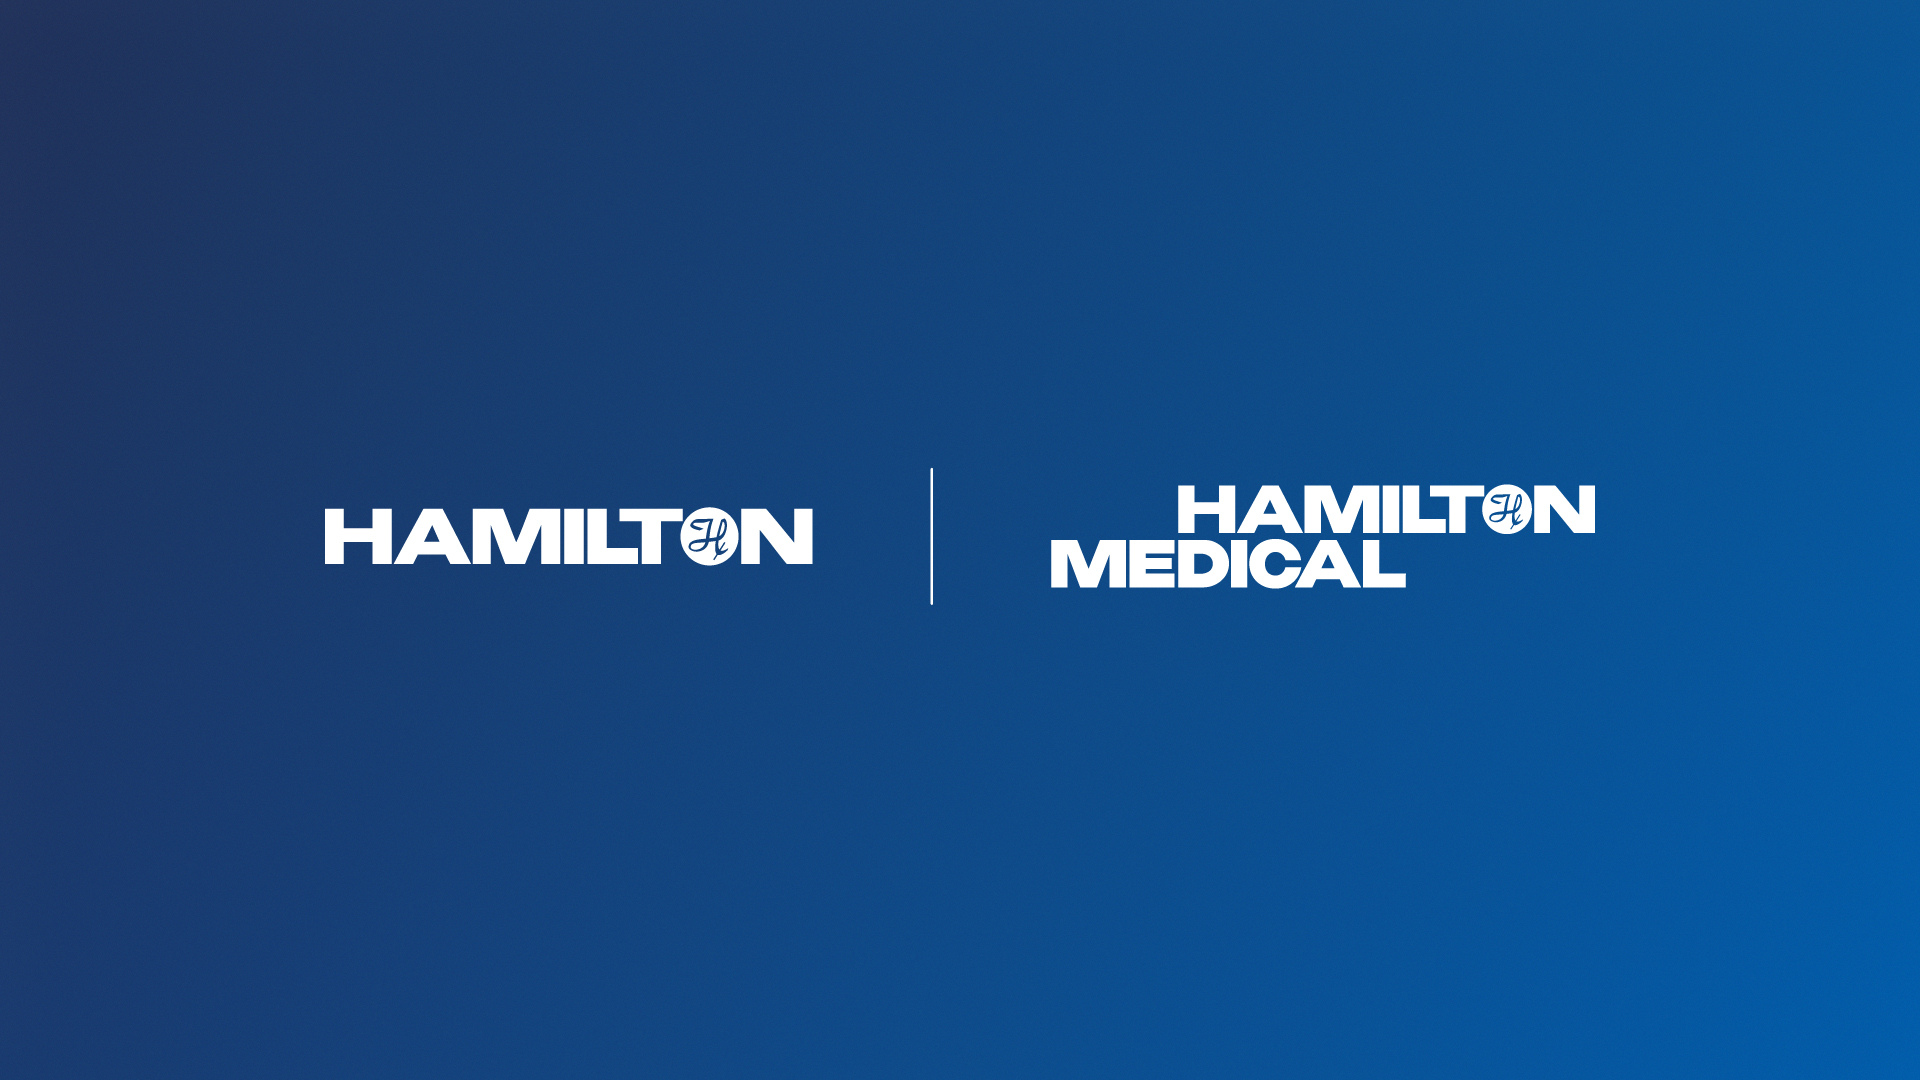 Hamilton Services - Frischer Auftritt innerhalb der Unternehmen.